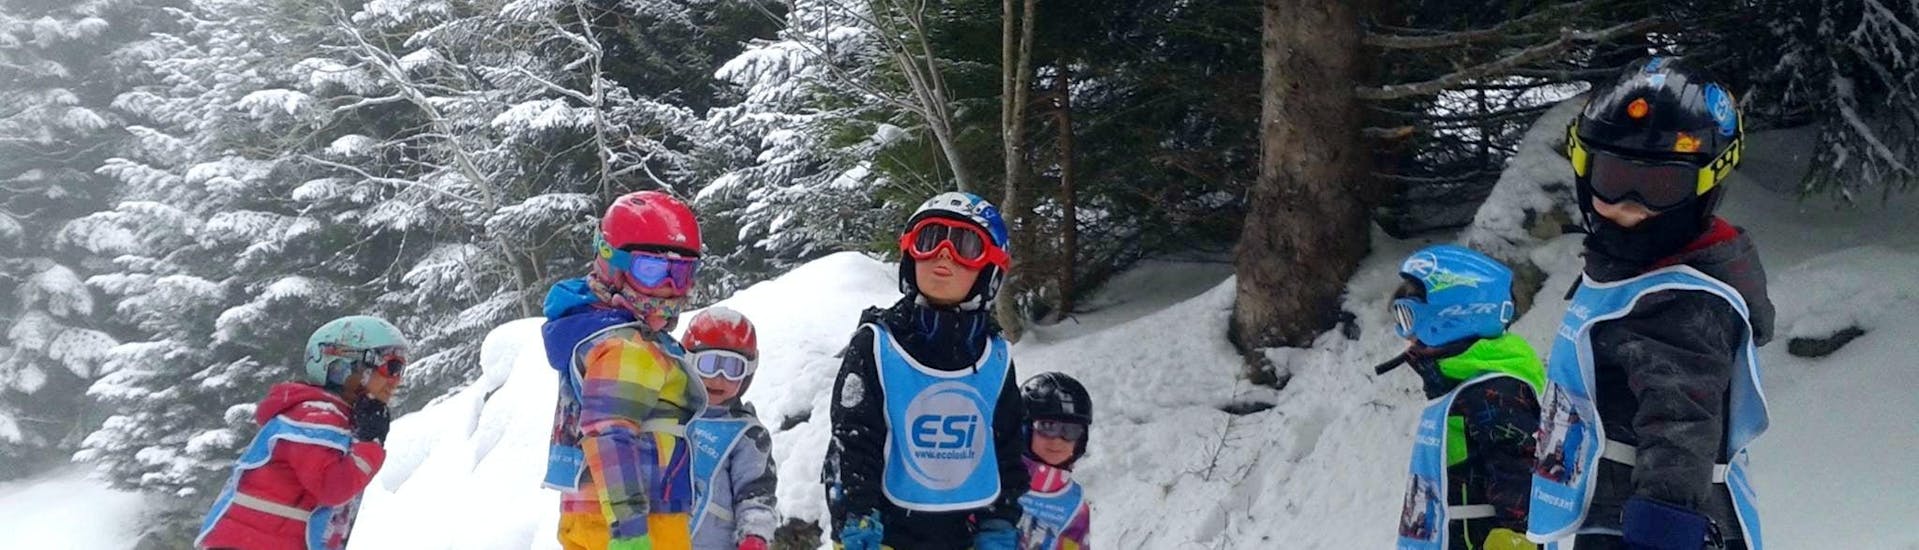 Kinder-Skikurs ab 3 Jahren ohne Erfahrung.